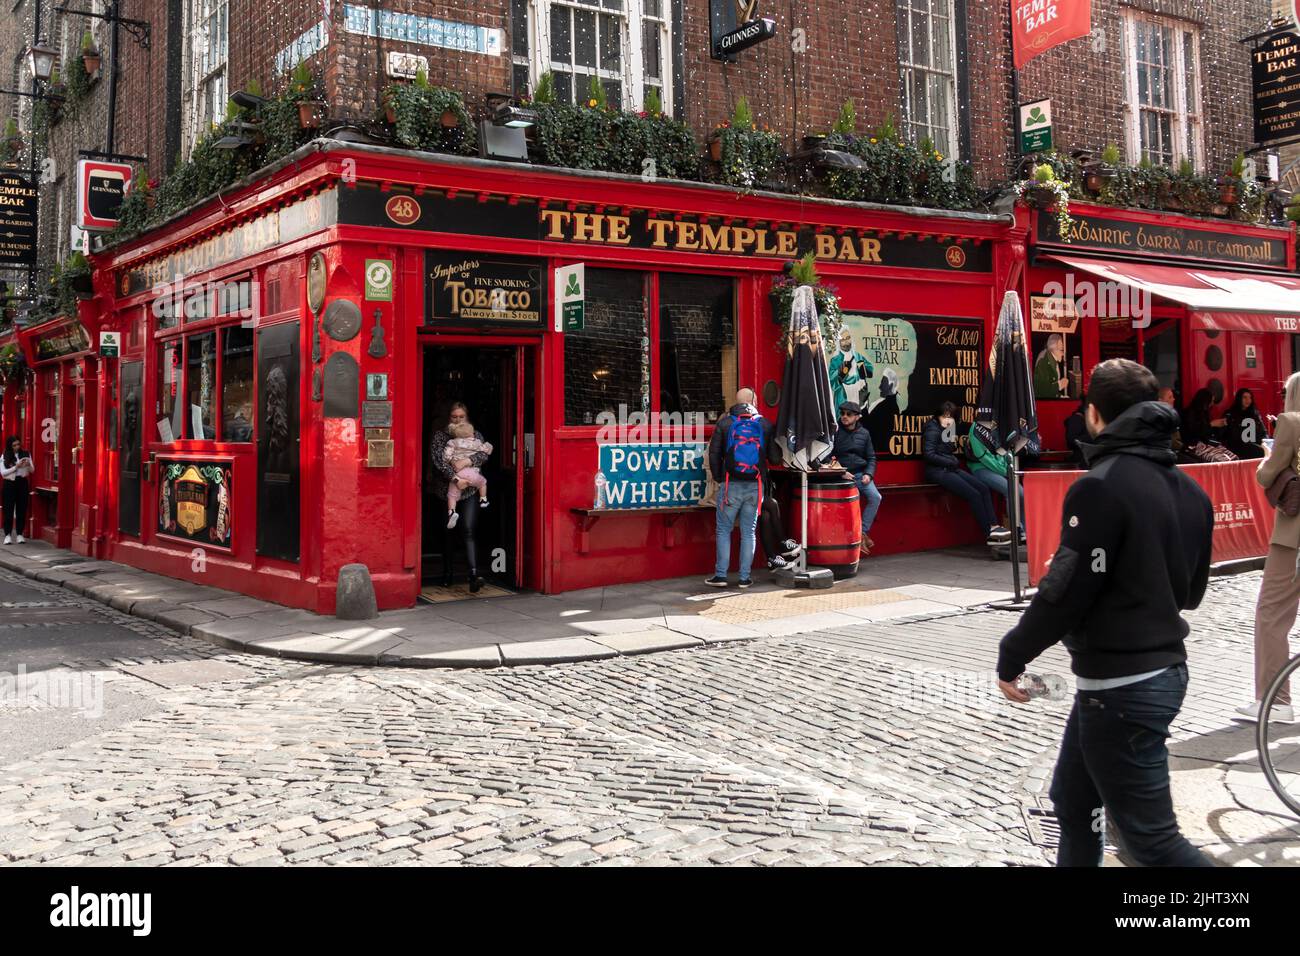 Dublino, Irlanda - 24 marzo 2022: Folle di turisti si riuniscono nel quartiere Temple Bar di Dublino, una colorata zona del centro della città. Foto Stock